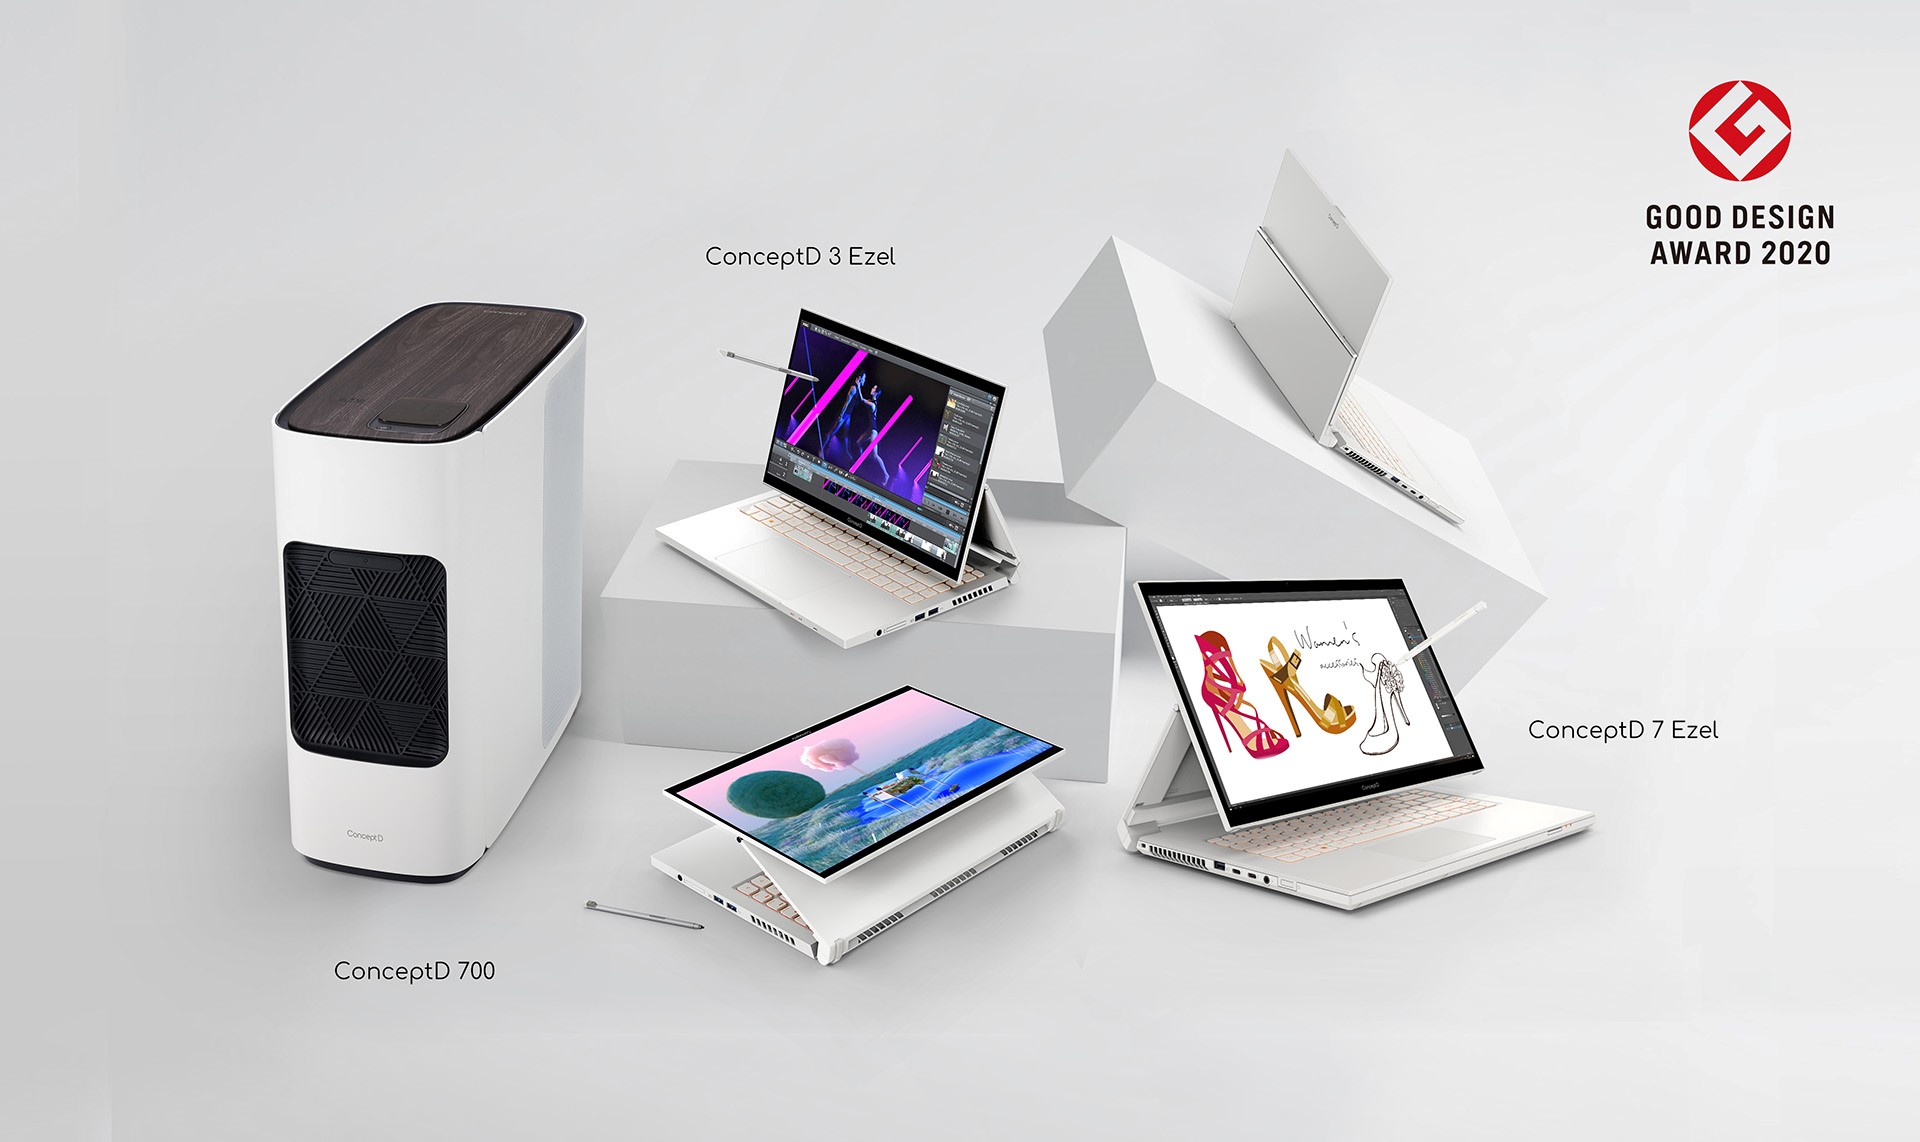 La línea ConceptD de Acer para creadores ganó dos premios Good Design Awards 2020, compartidos entre tres computadores llenos de diseño e innovación